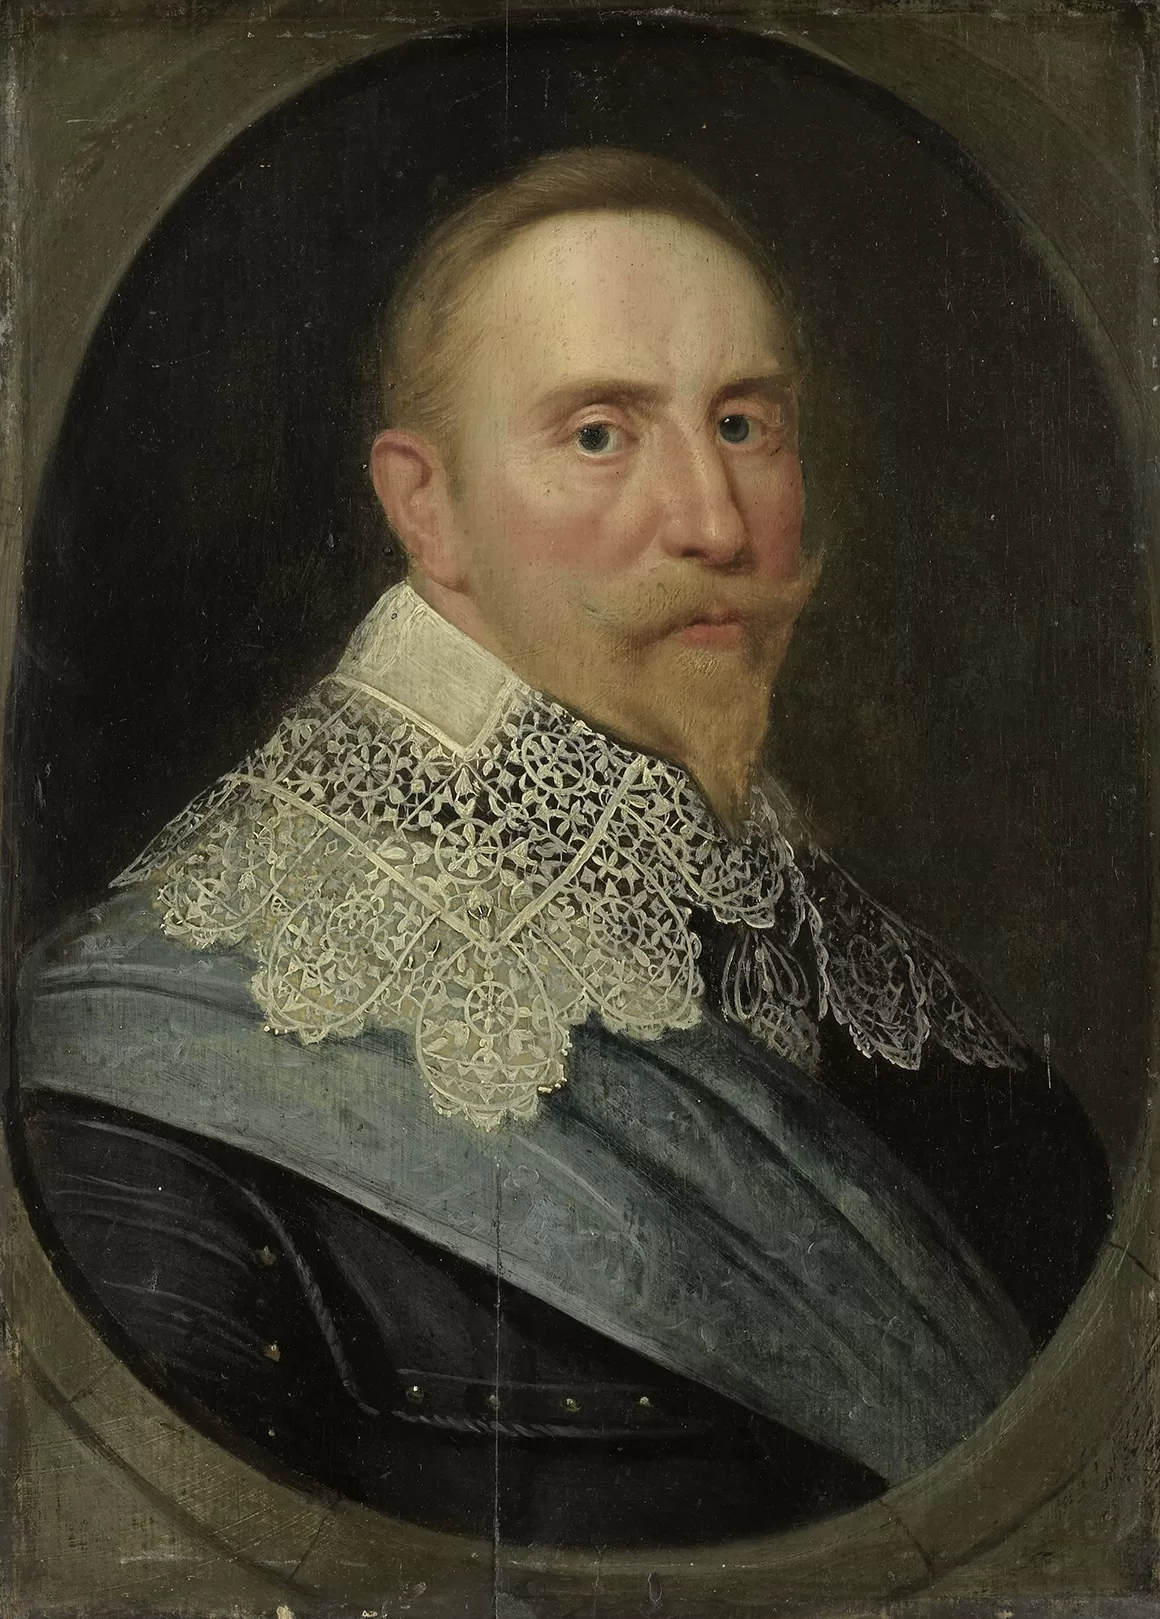 Portret szwedzkiego króla Gustawa II Adolfa, który zginął w bitwie pod Lützen w 1632 r. fotografia